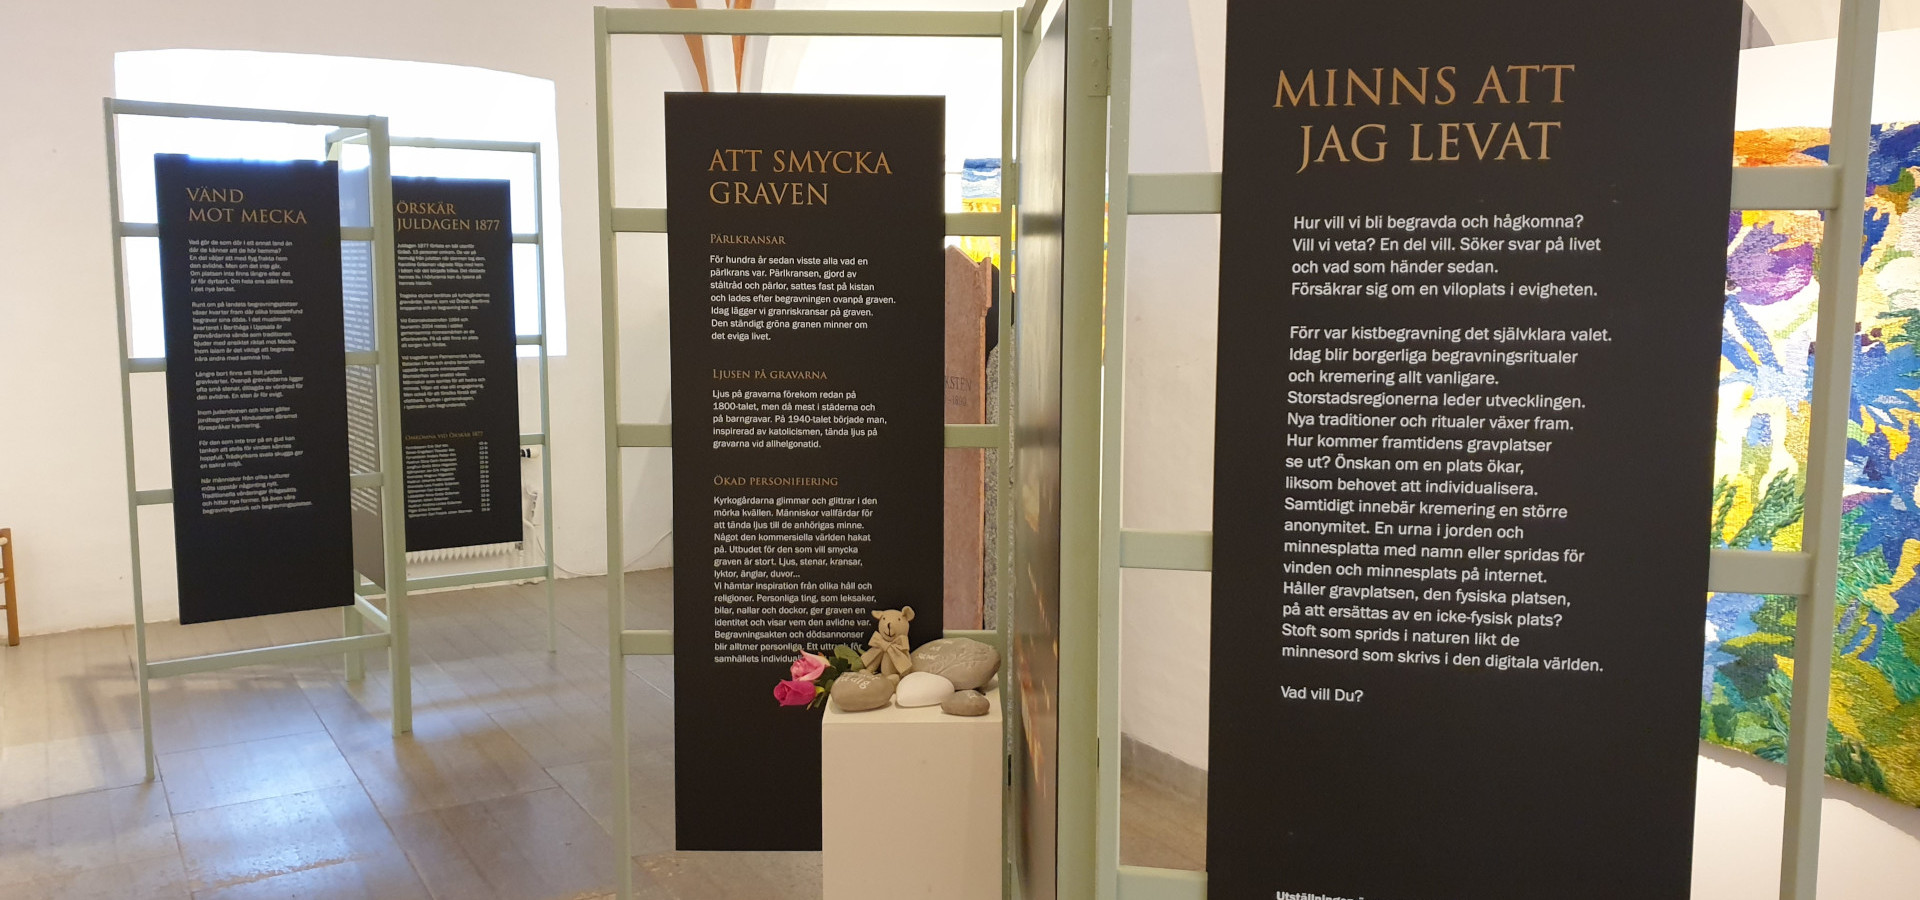 Sancta Birgitta Klostermuseum: Minns att jag levat (26/11-13/3)